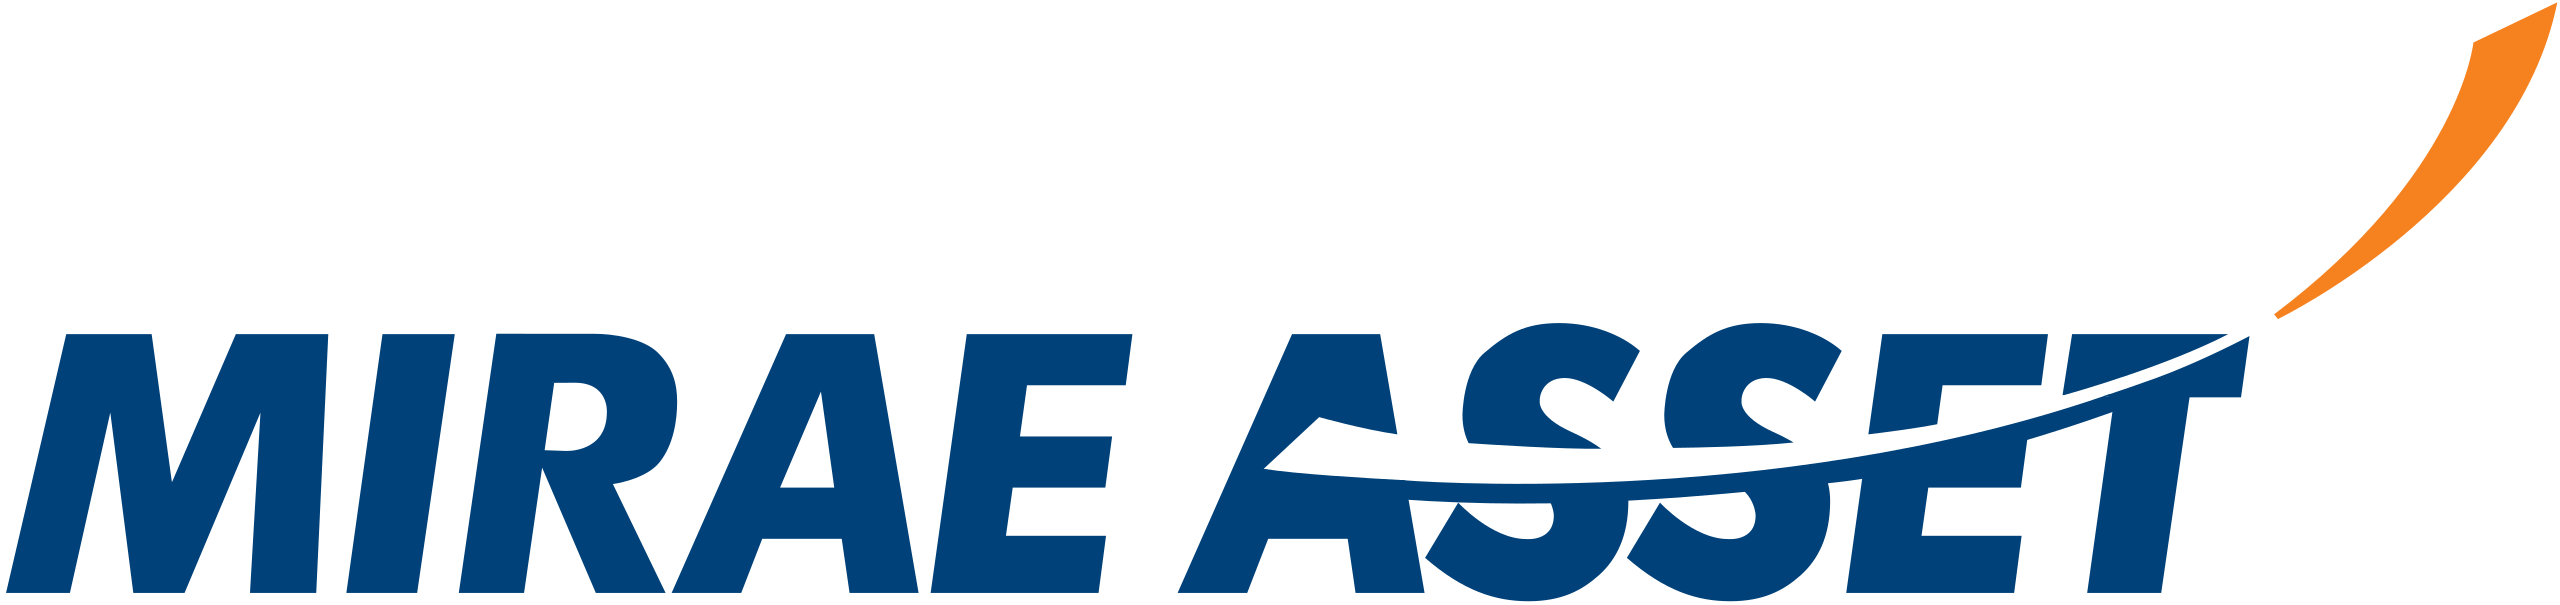 Mirae_Asset_Logo.svg